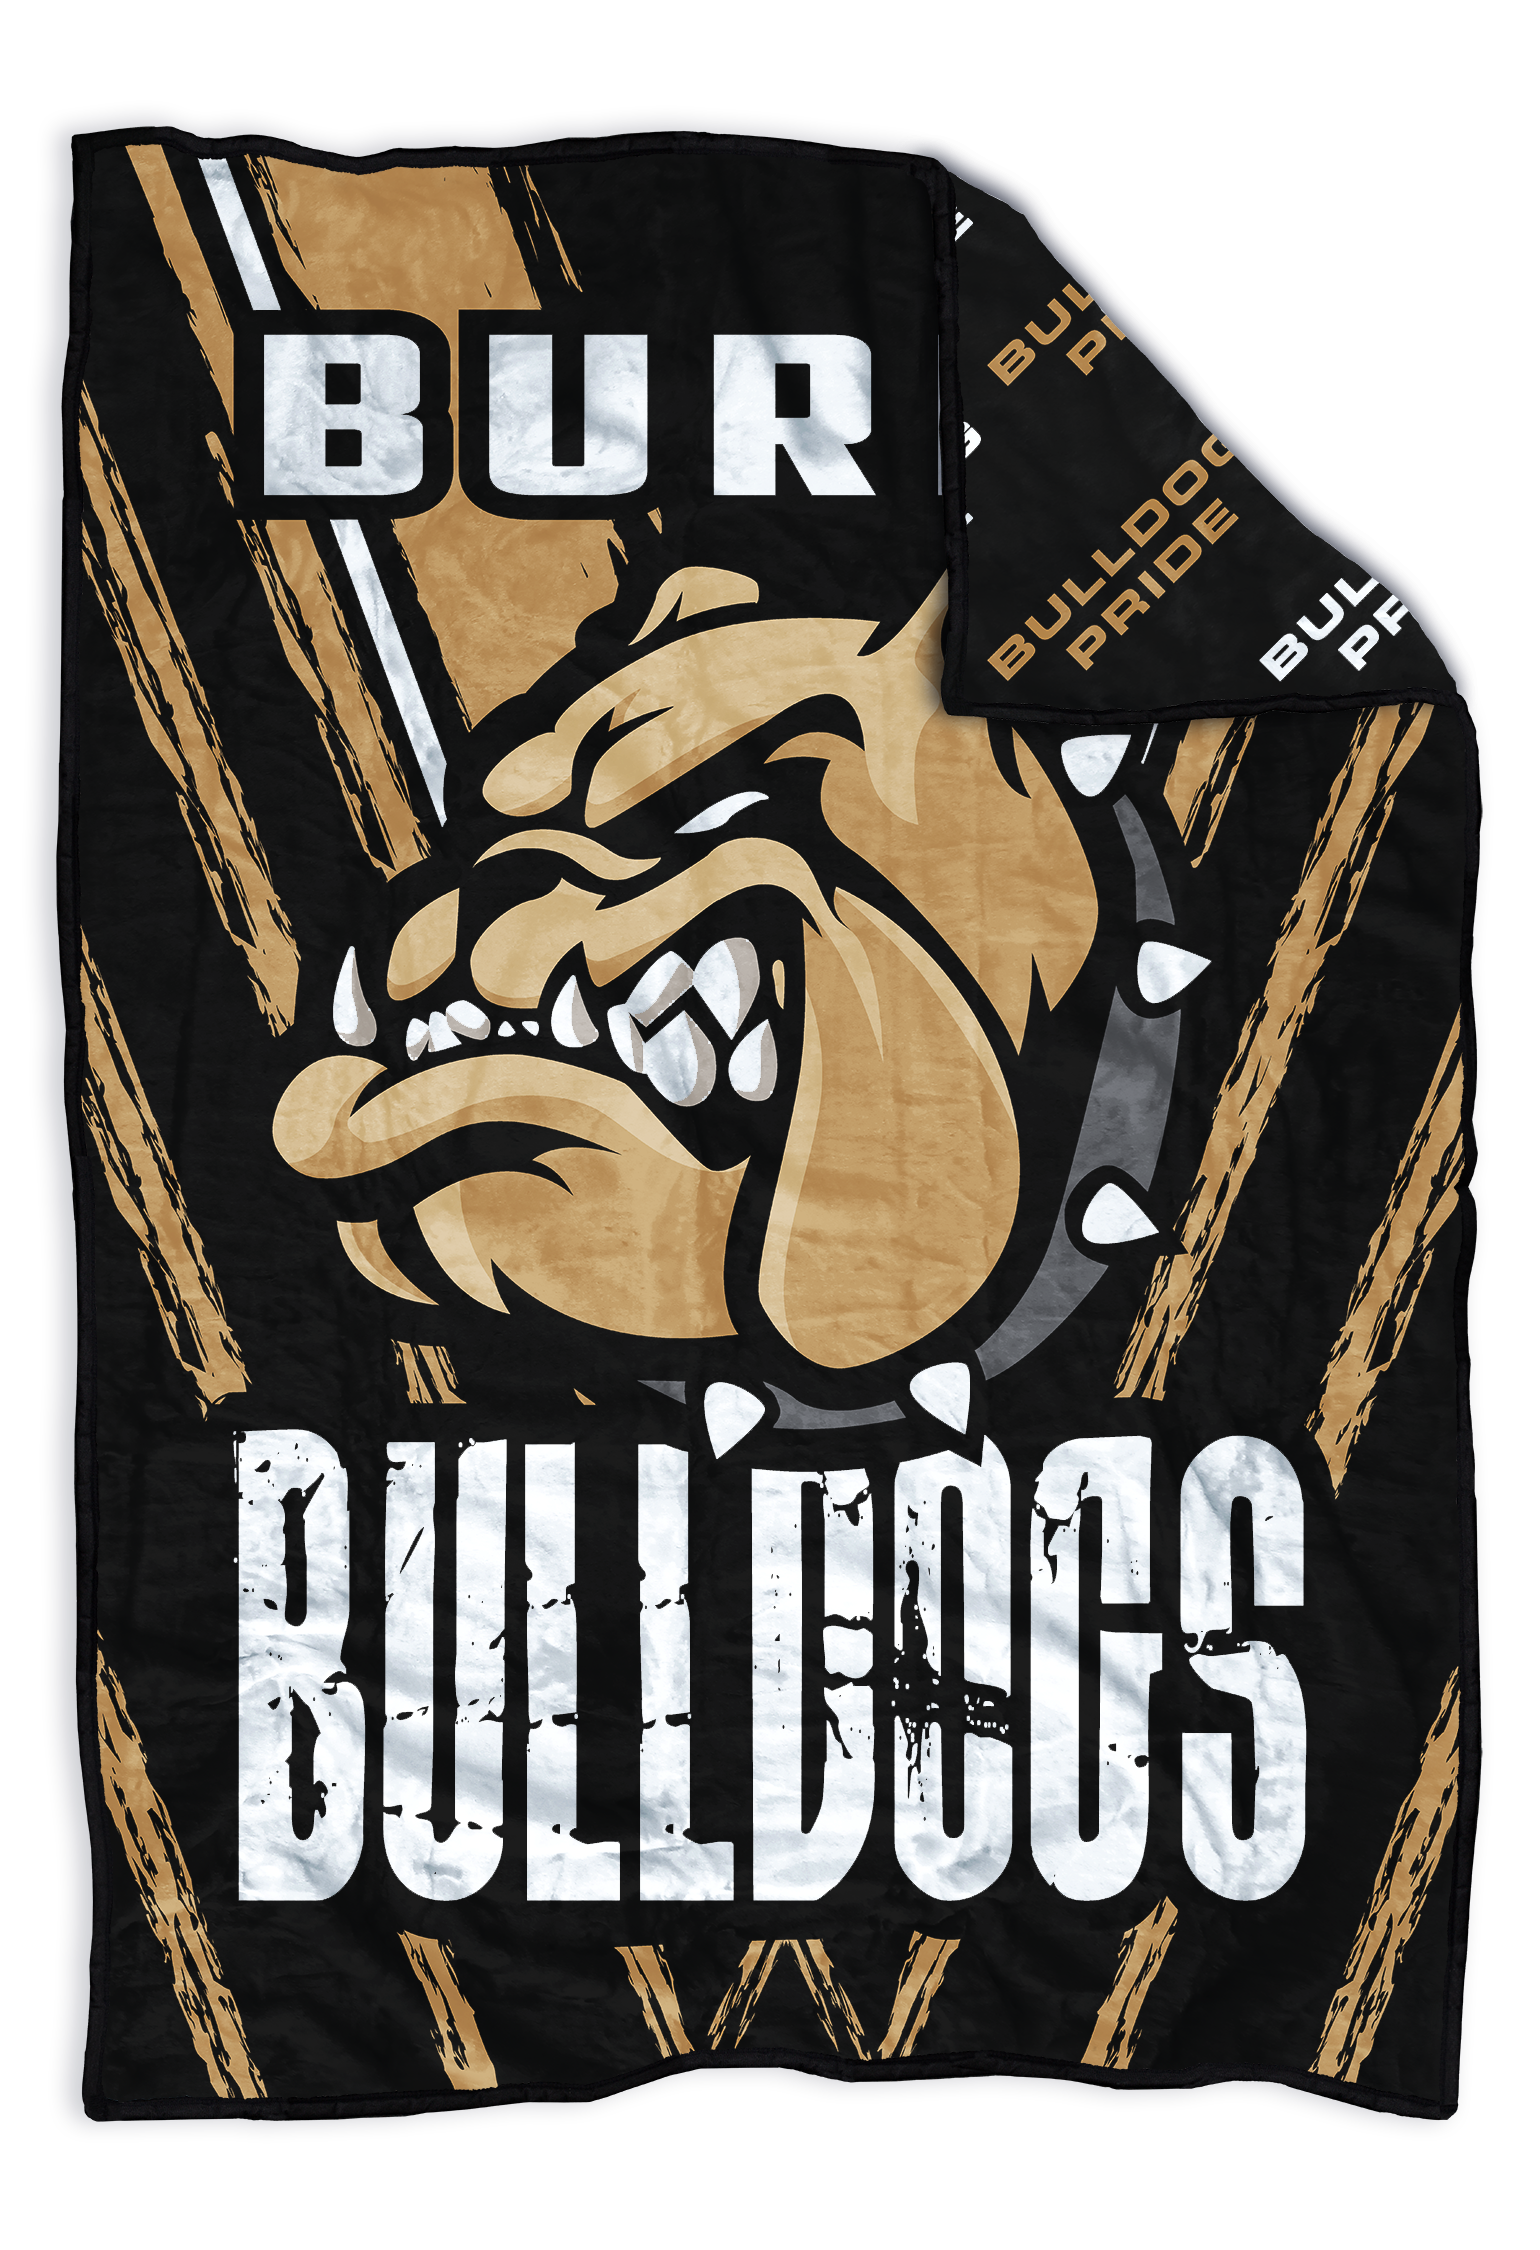 Burke Bulldogs